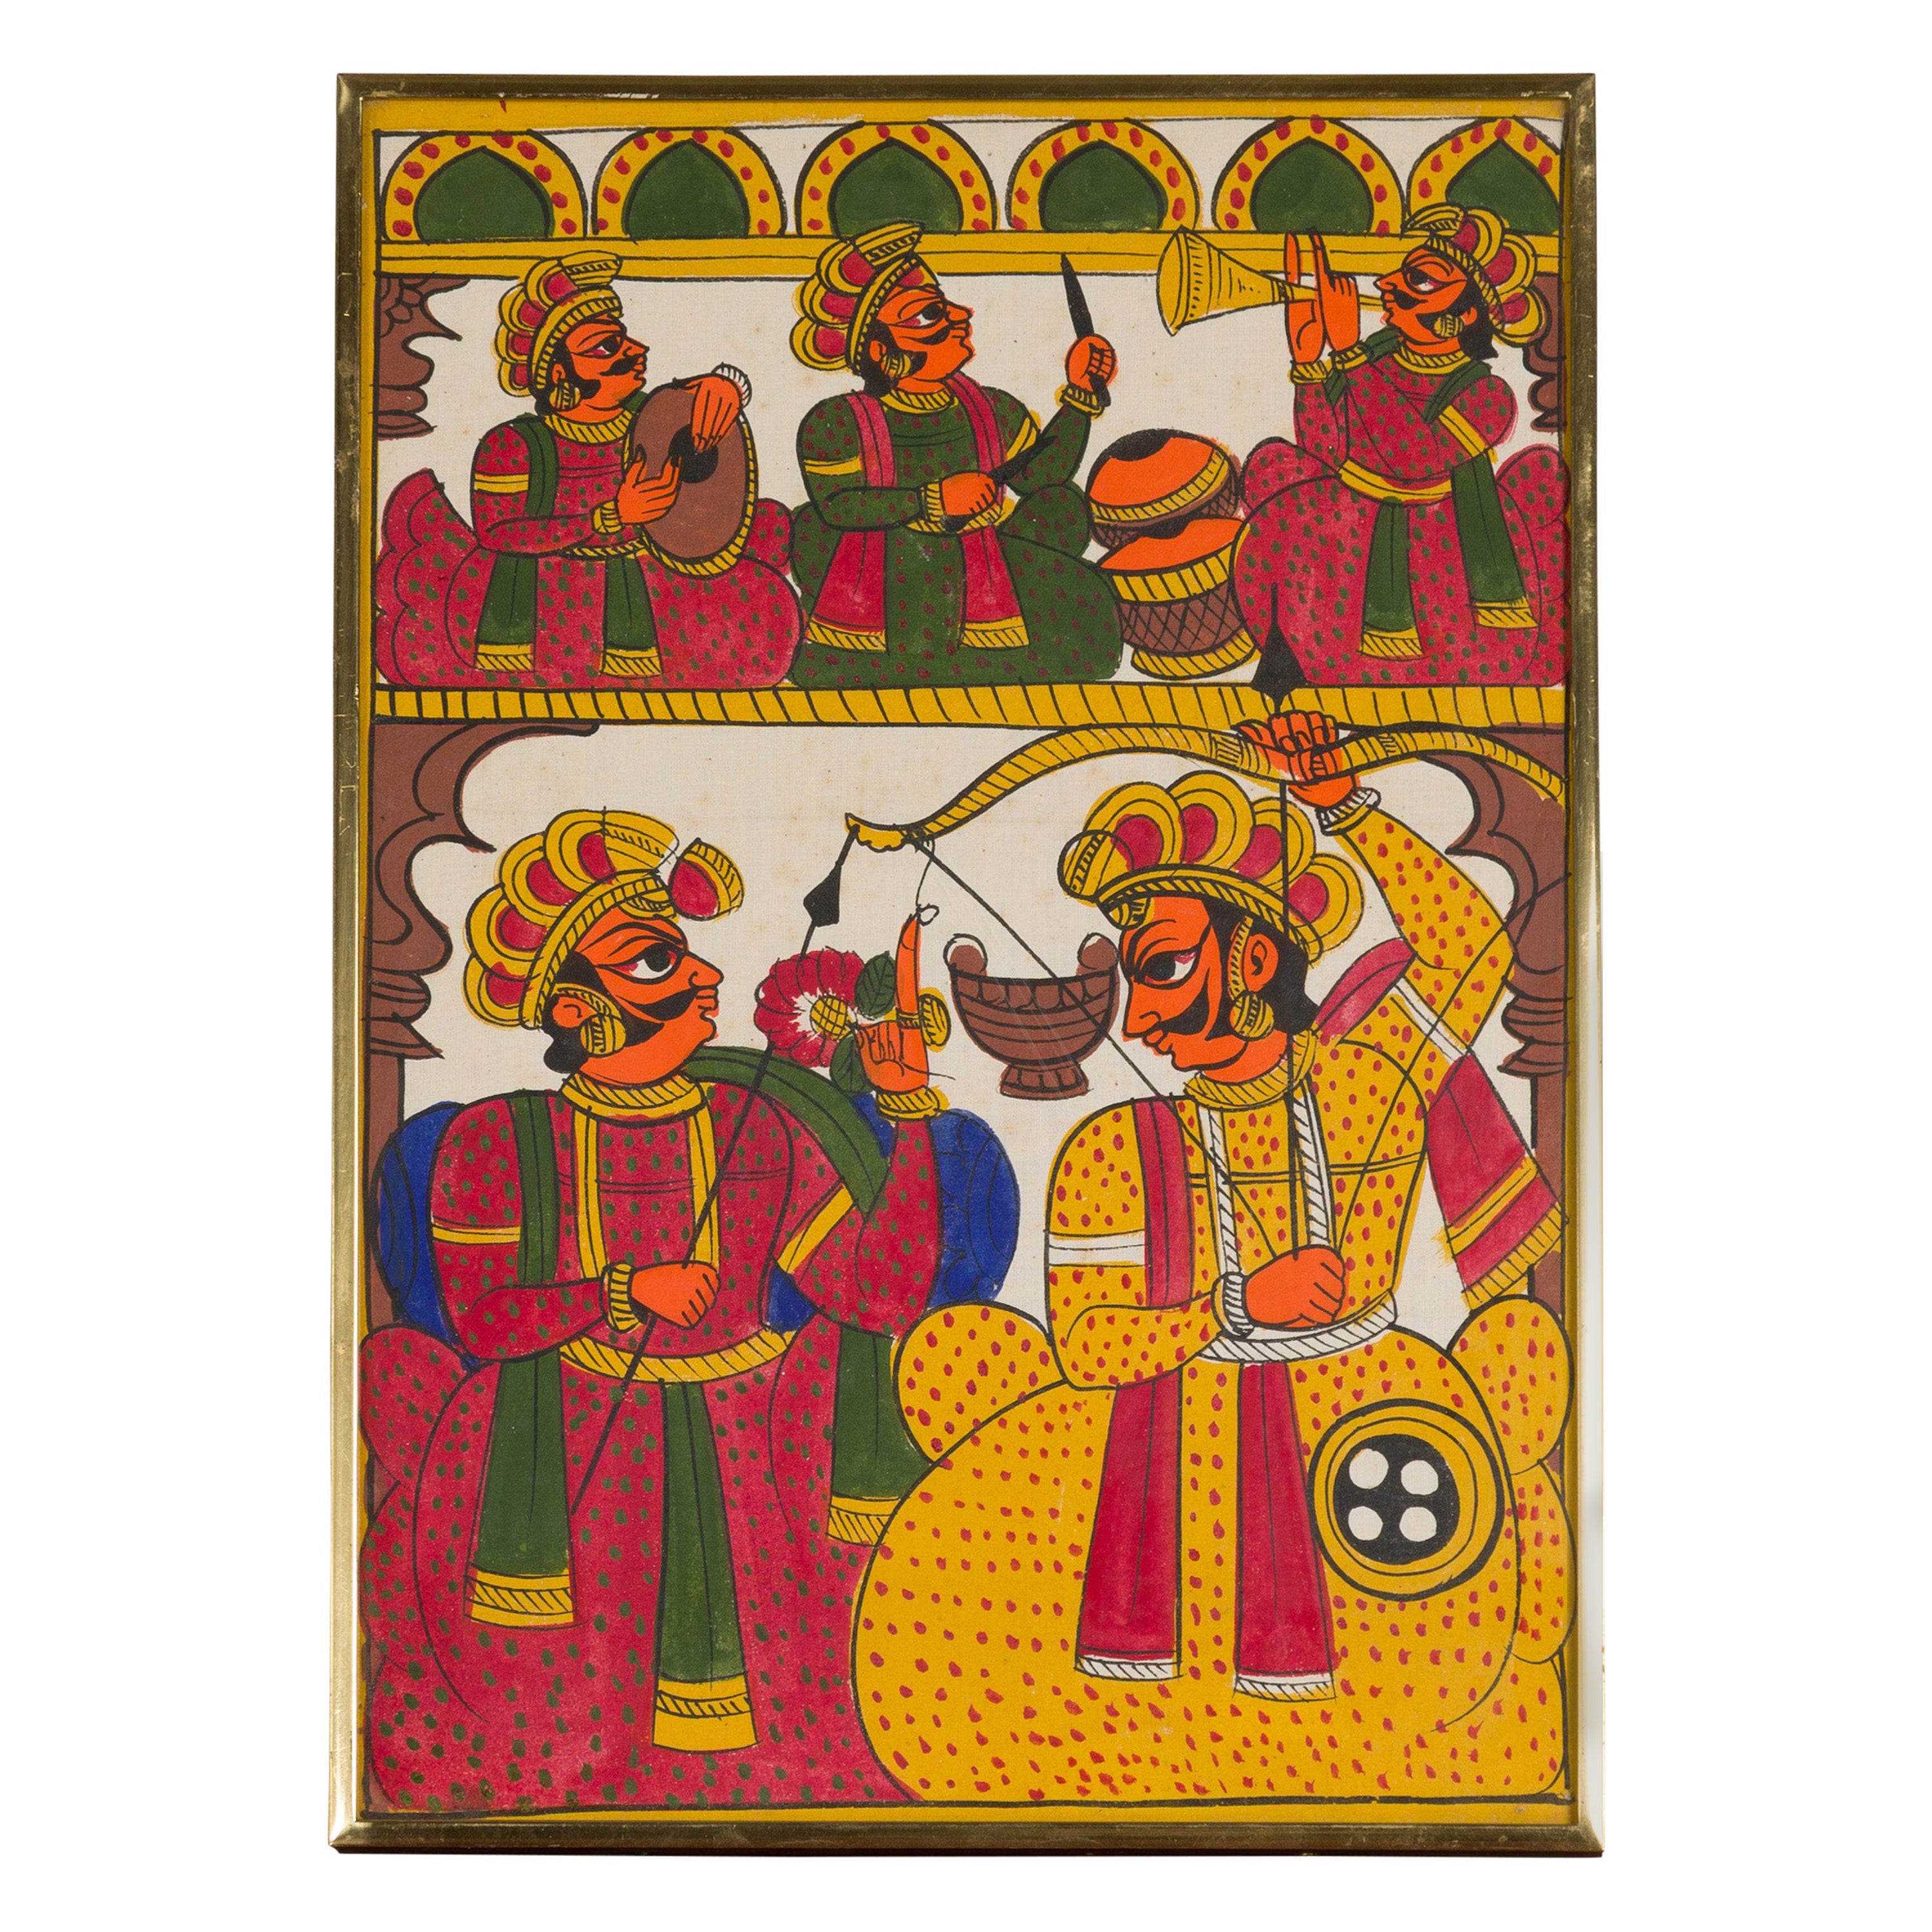 Peinture d'art populaire indienne ancienne peinte à la main représentant des musiciens et des archers